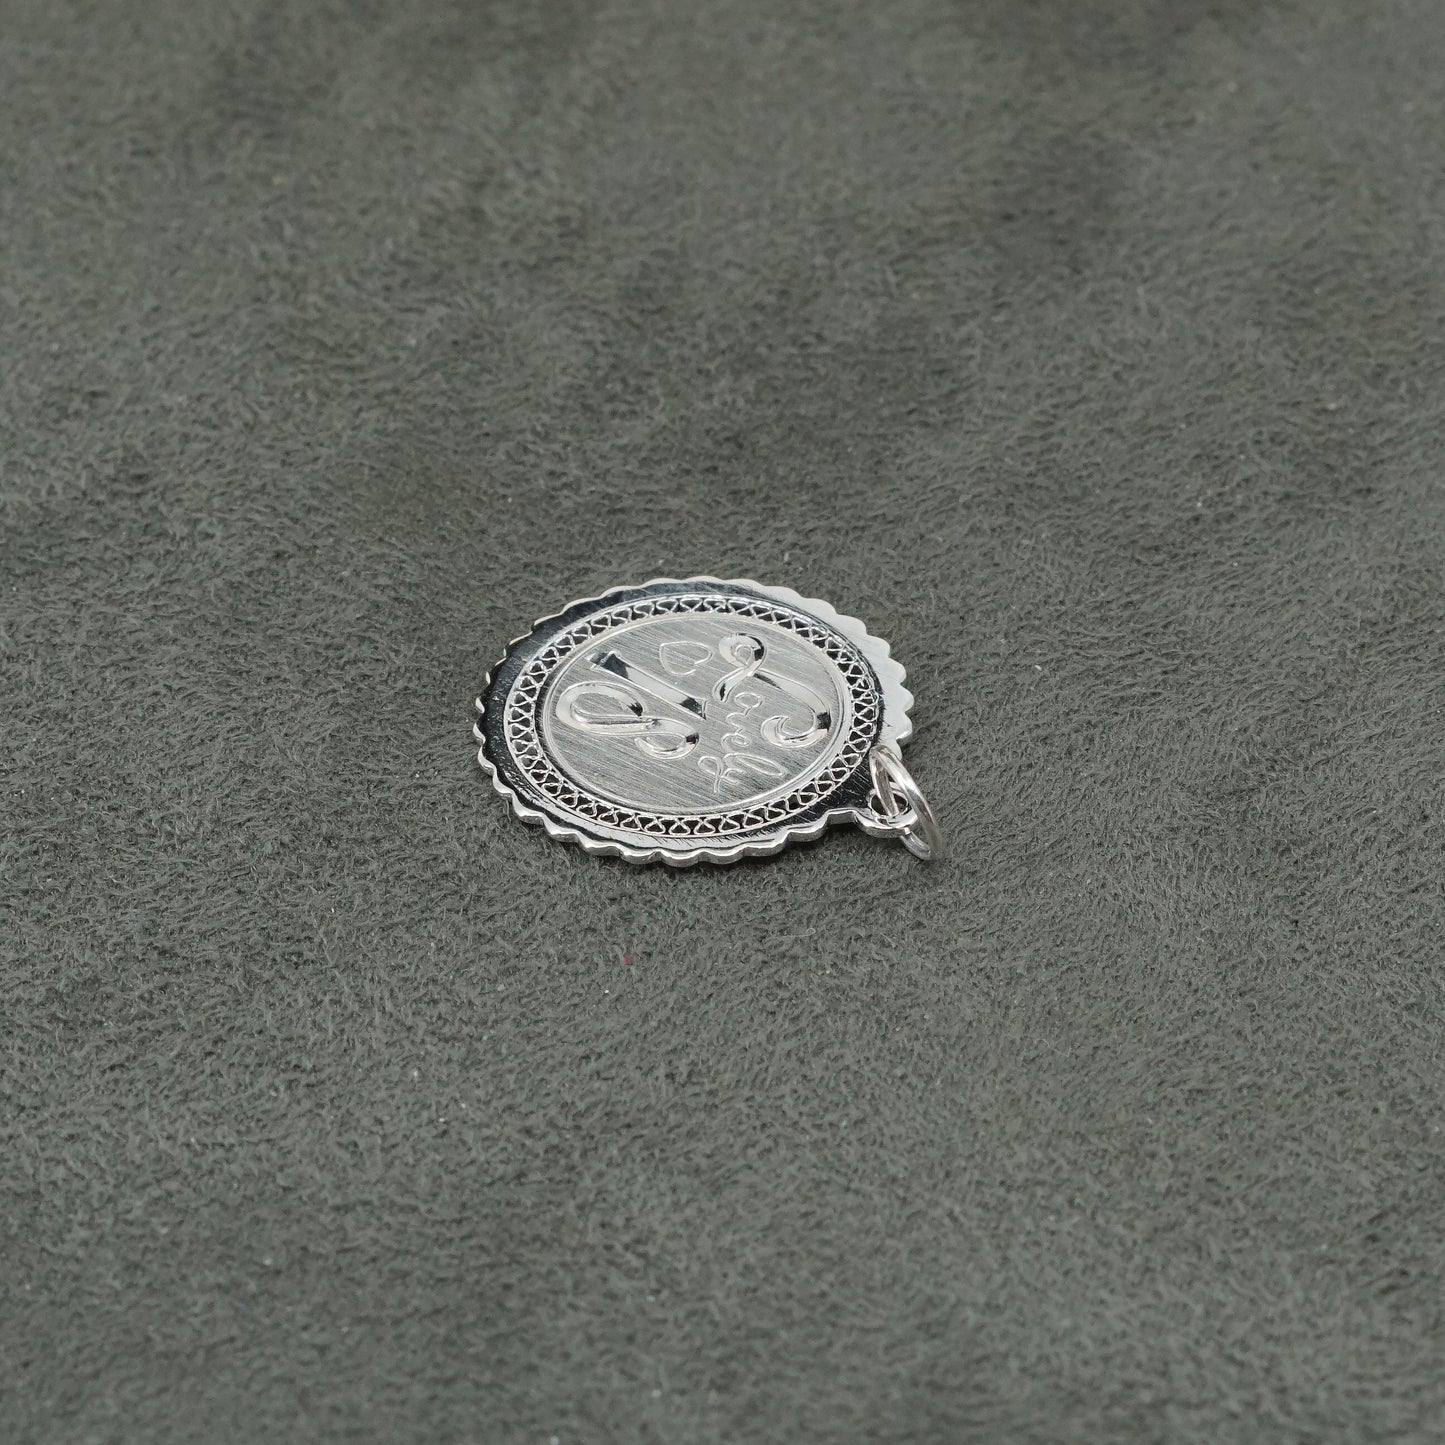 vtg Sterling silver handmade engraved "lovely 18" pendant, 925 tag charm